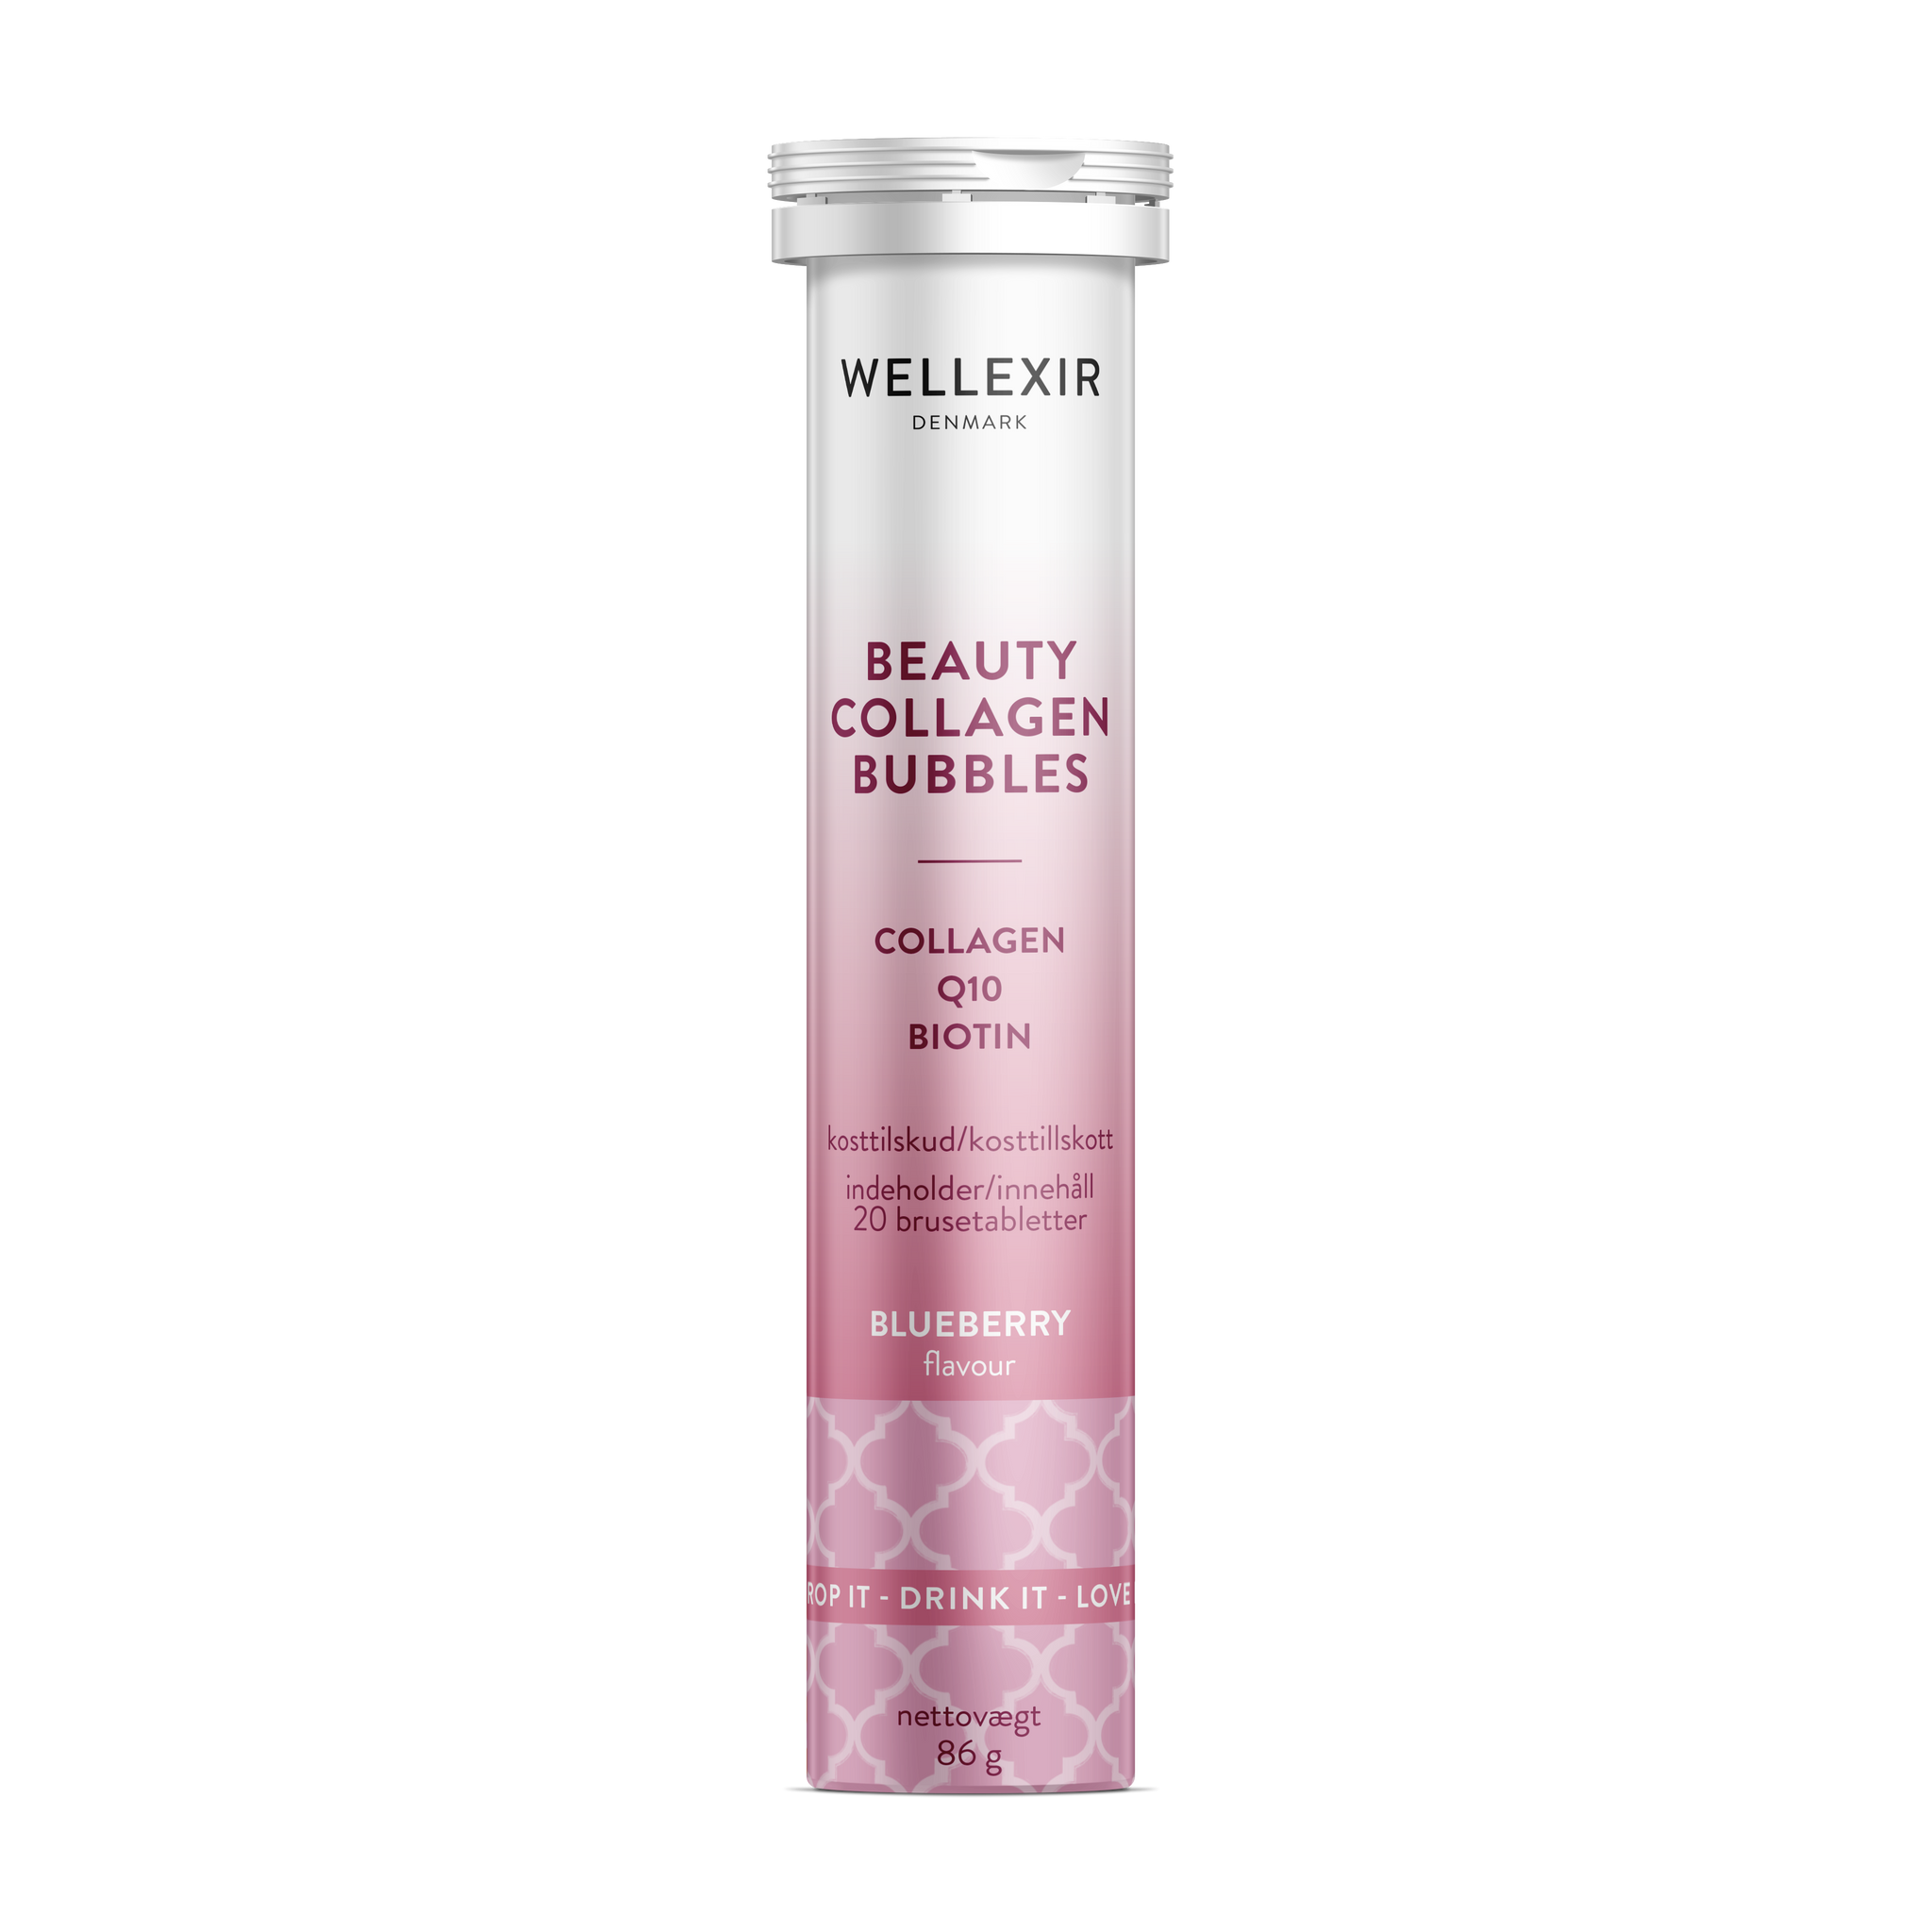 WELLEXIR Beauty Collagen Bubbles